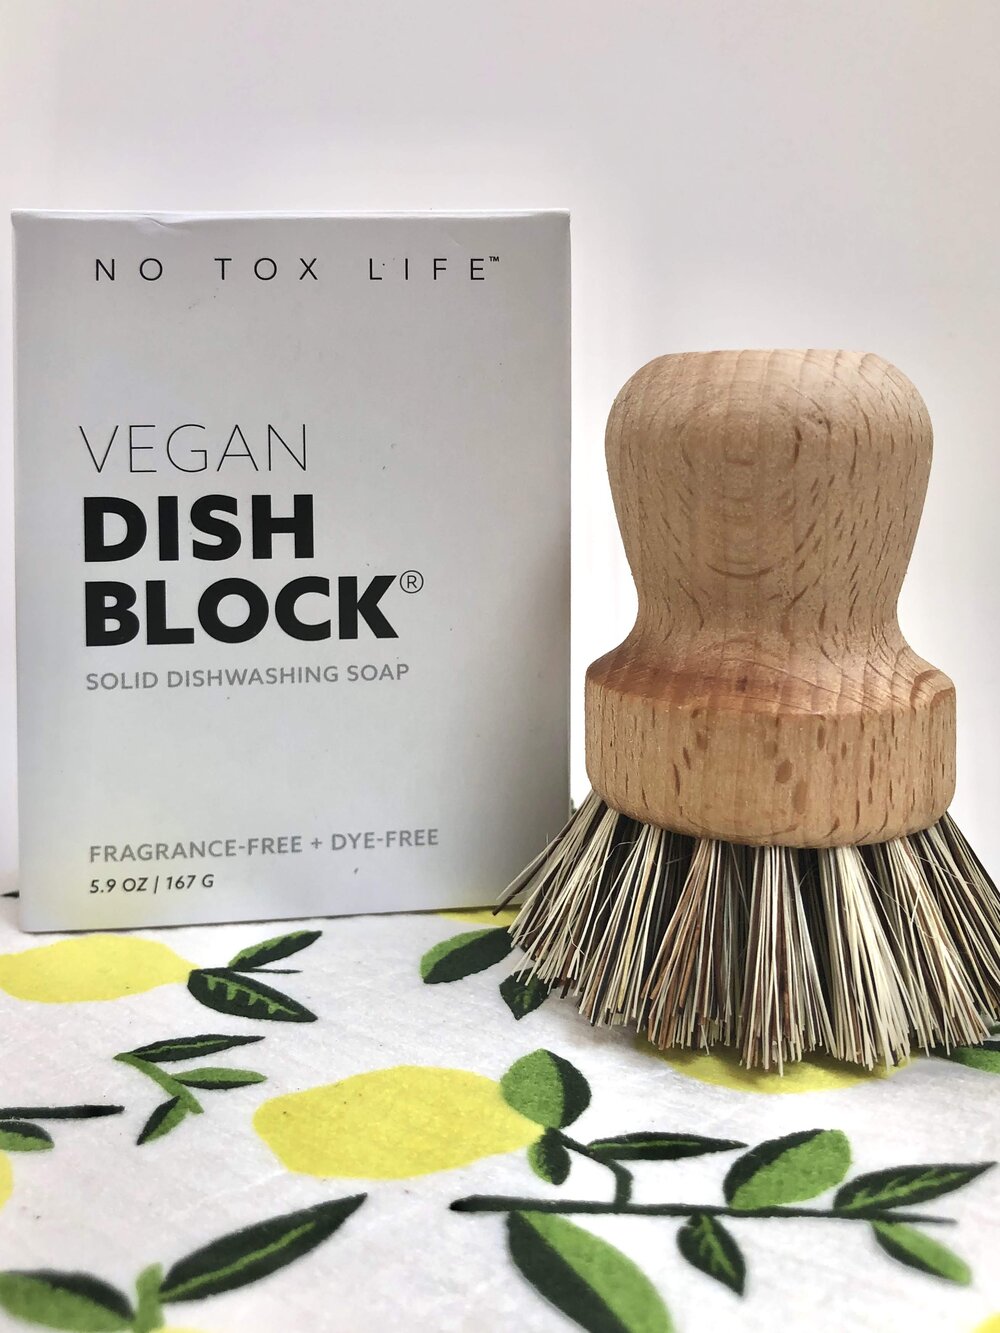 No Tox Life Dish Washing Block - Dish Soap Bar - No Tox Life